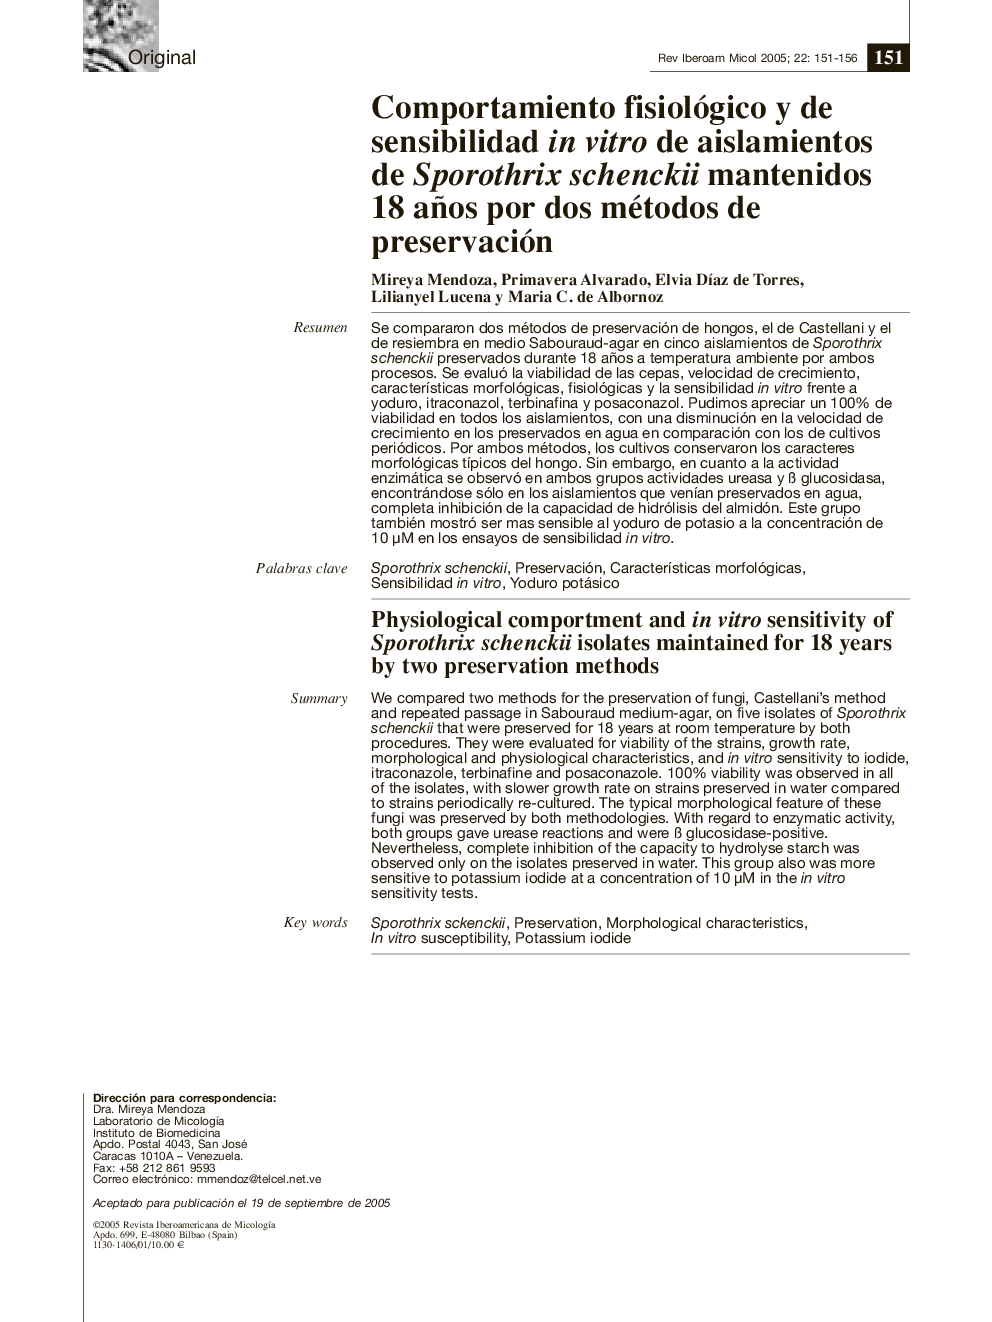 Comportamiento fisiológico y de sensibilidad in vitro de aislamientos de Sporothrix schenckii mantenidos 18 años por dos métodos de preservación